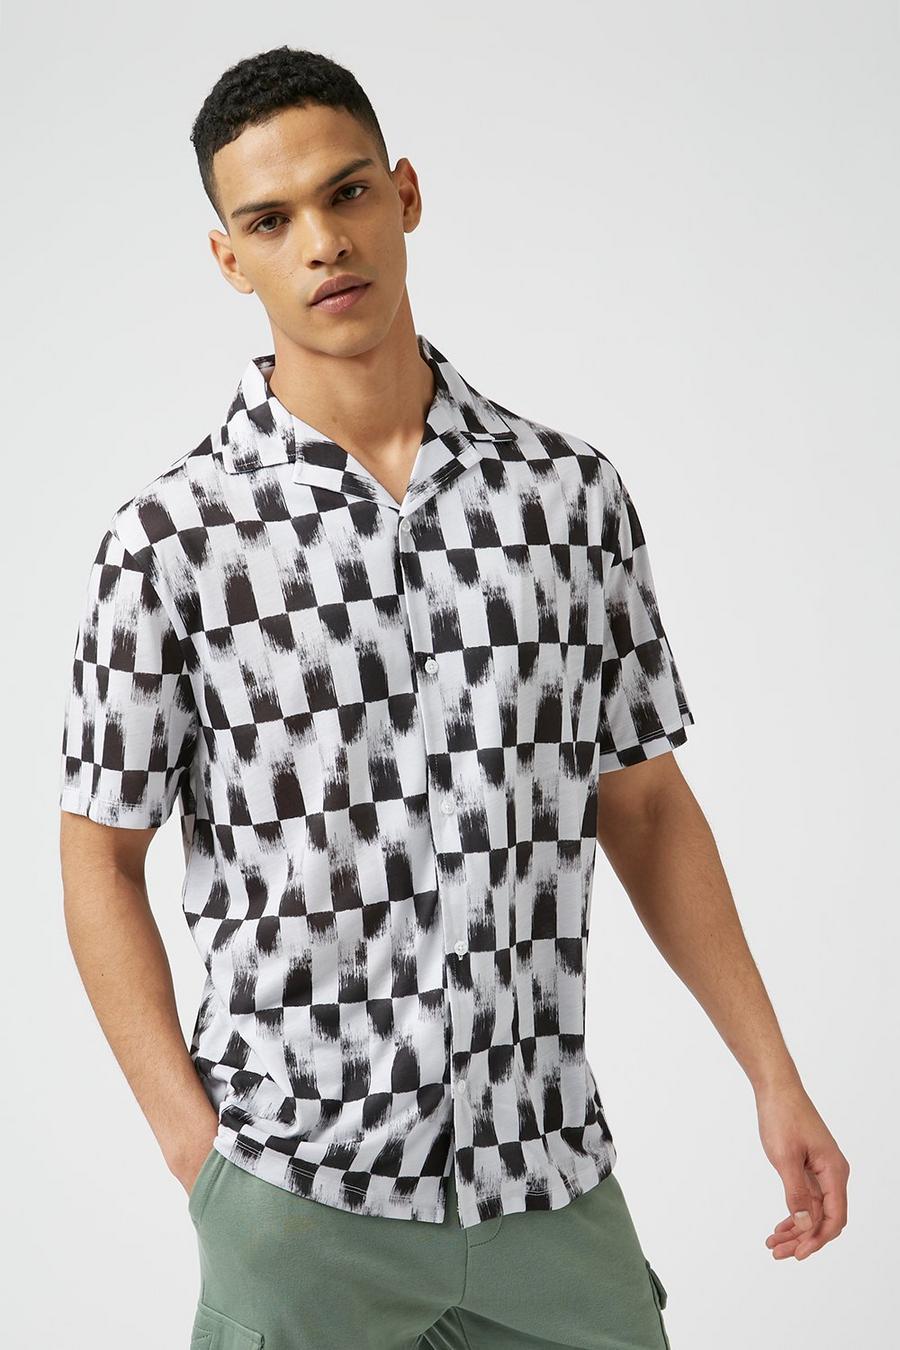 Abstract Checkered Print Shirt